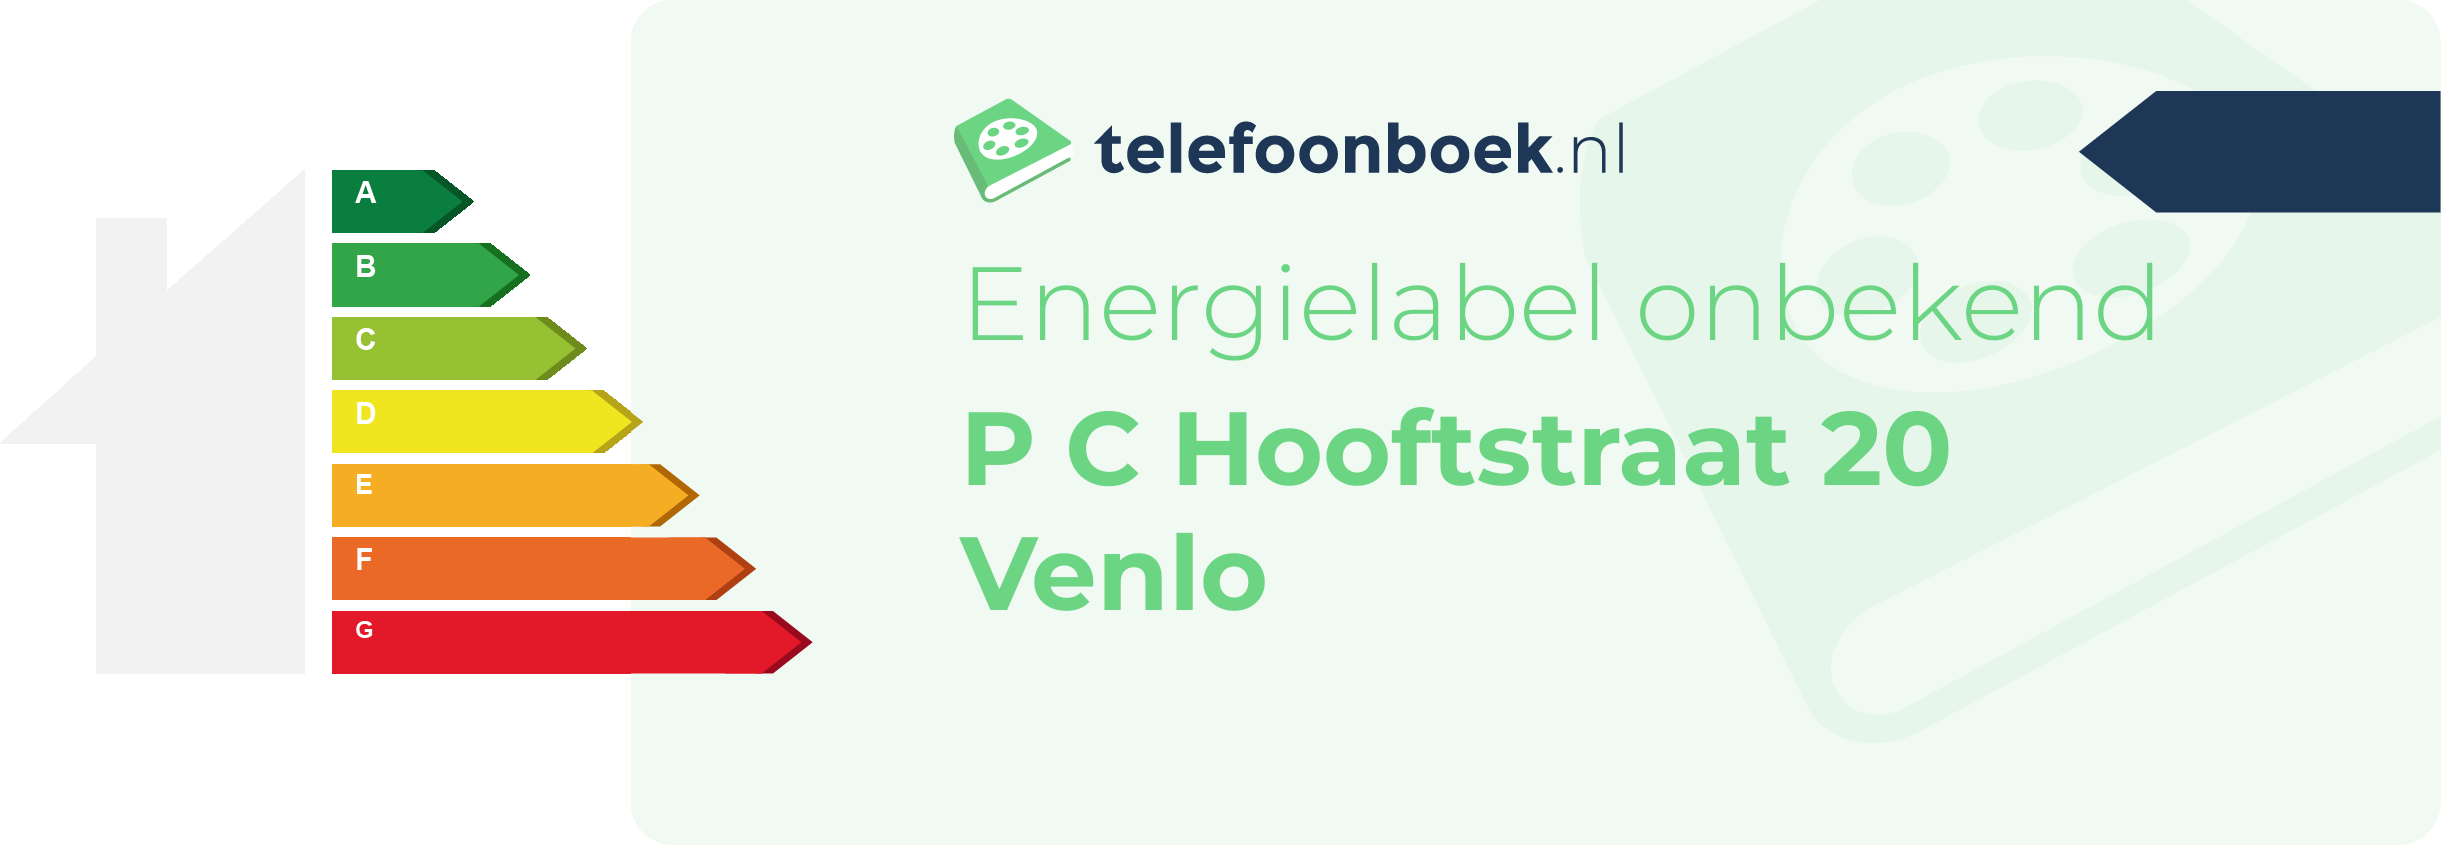 Energielabel P C Hooftstraat 20 Venlo